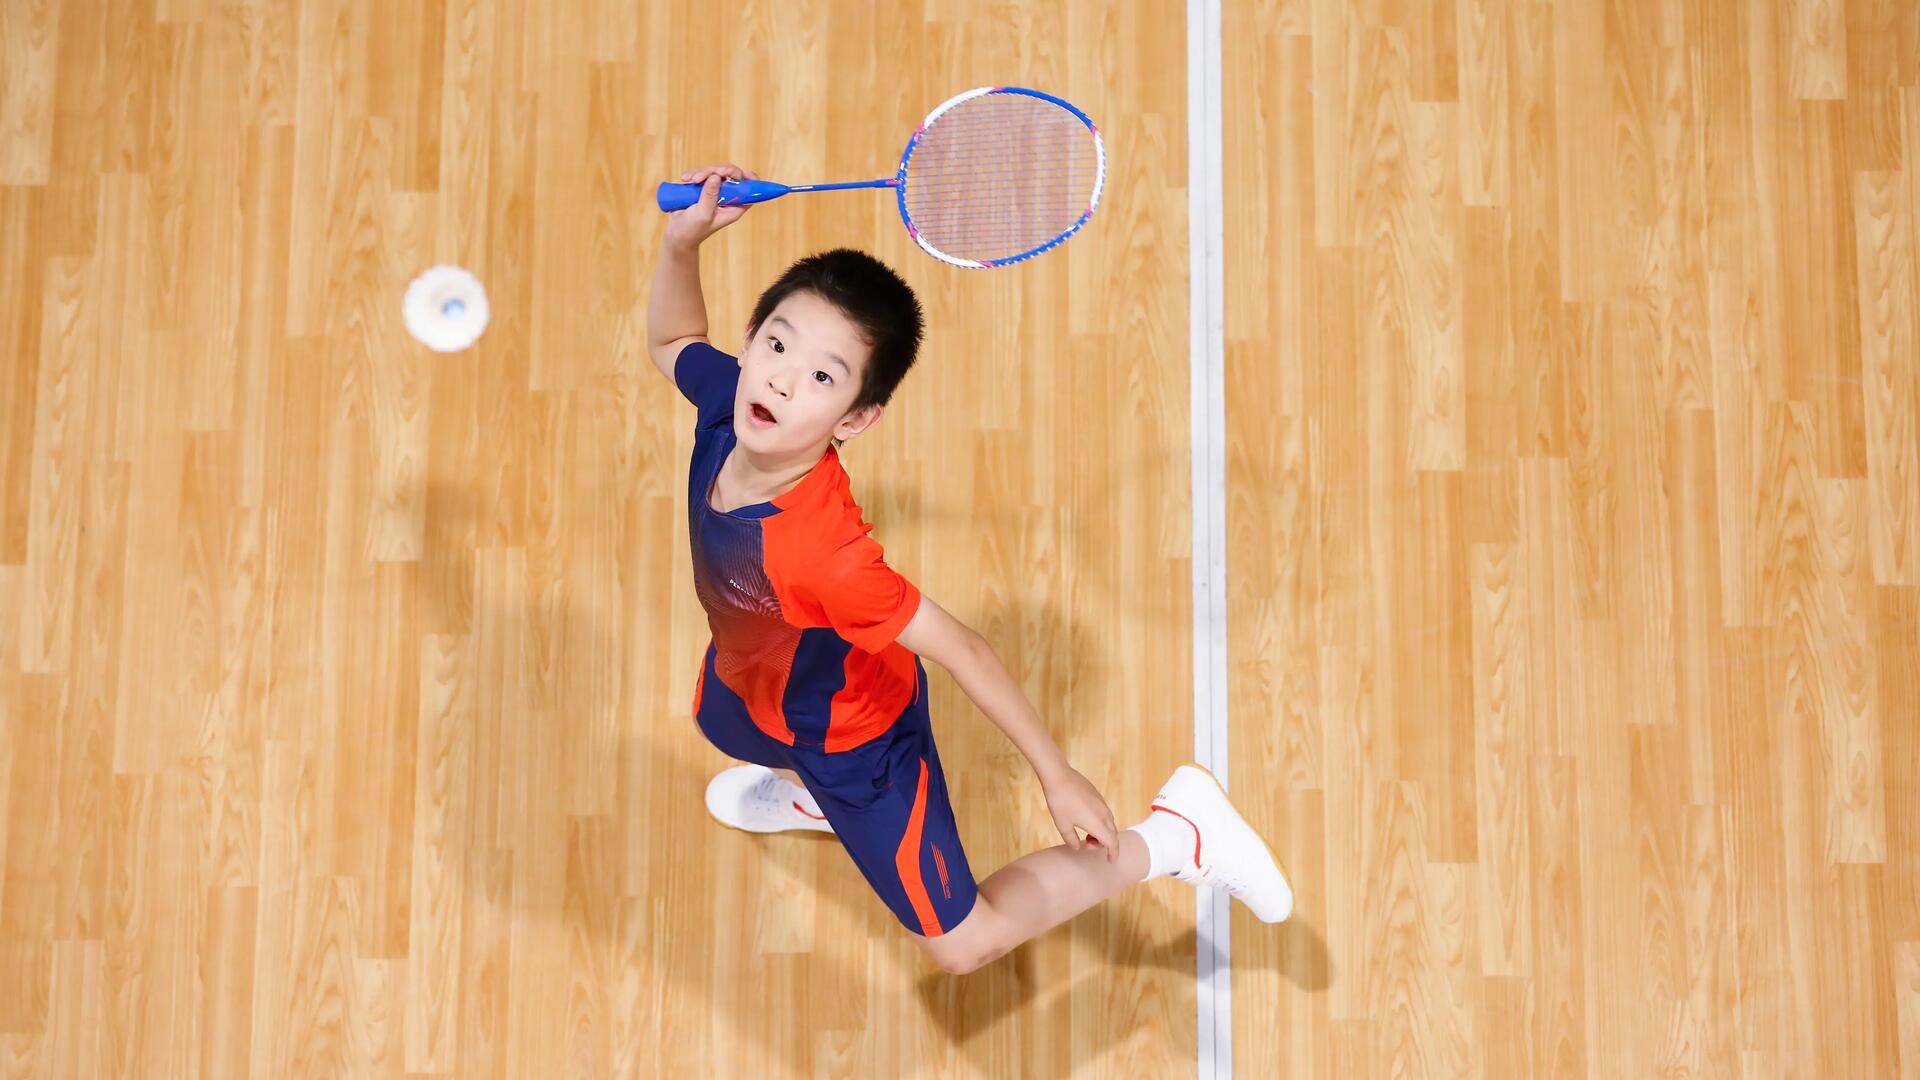 marca sport badminton decathlon